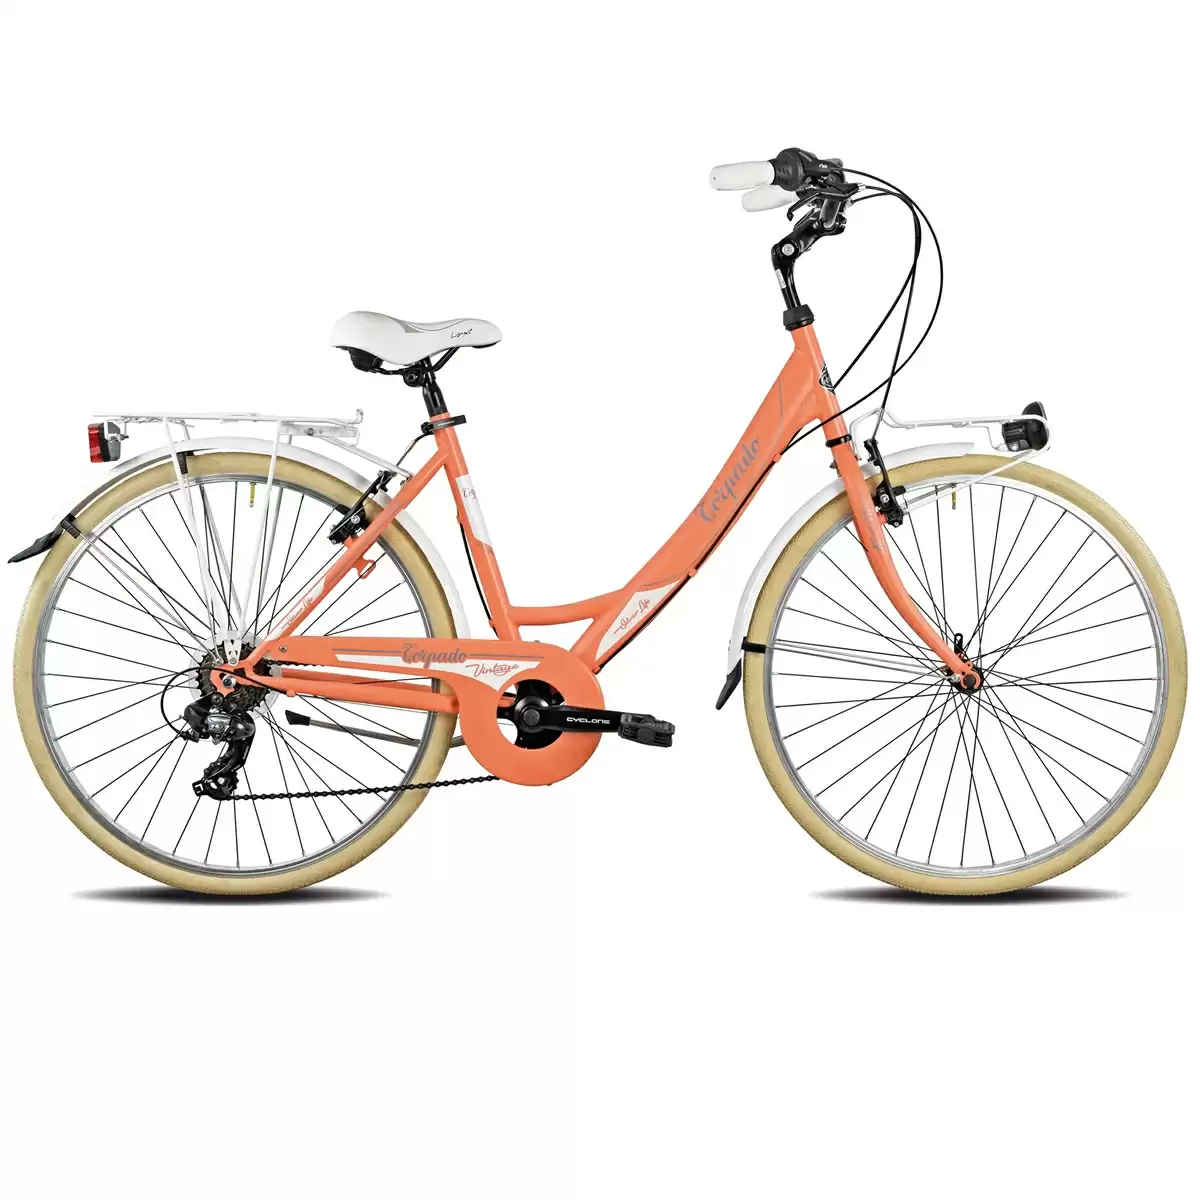 bici city T120 silverlife 26'' donna acciaio 6 velocità arancione Pesca - image